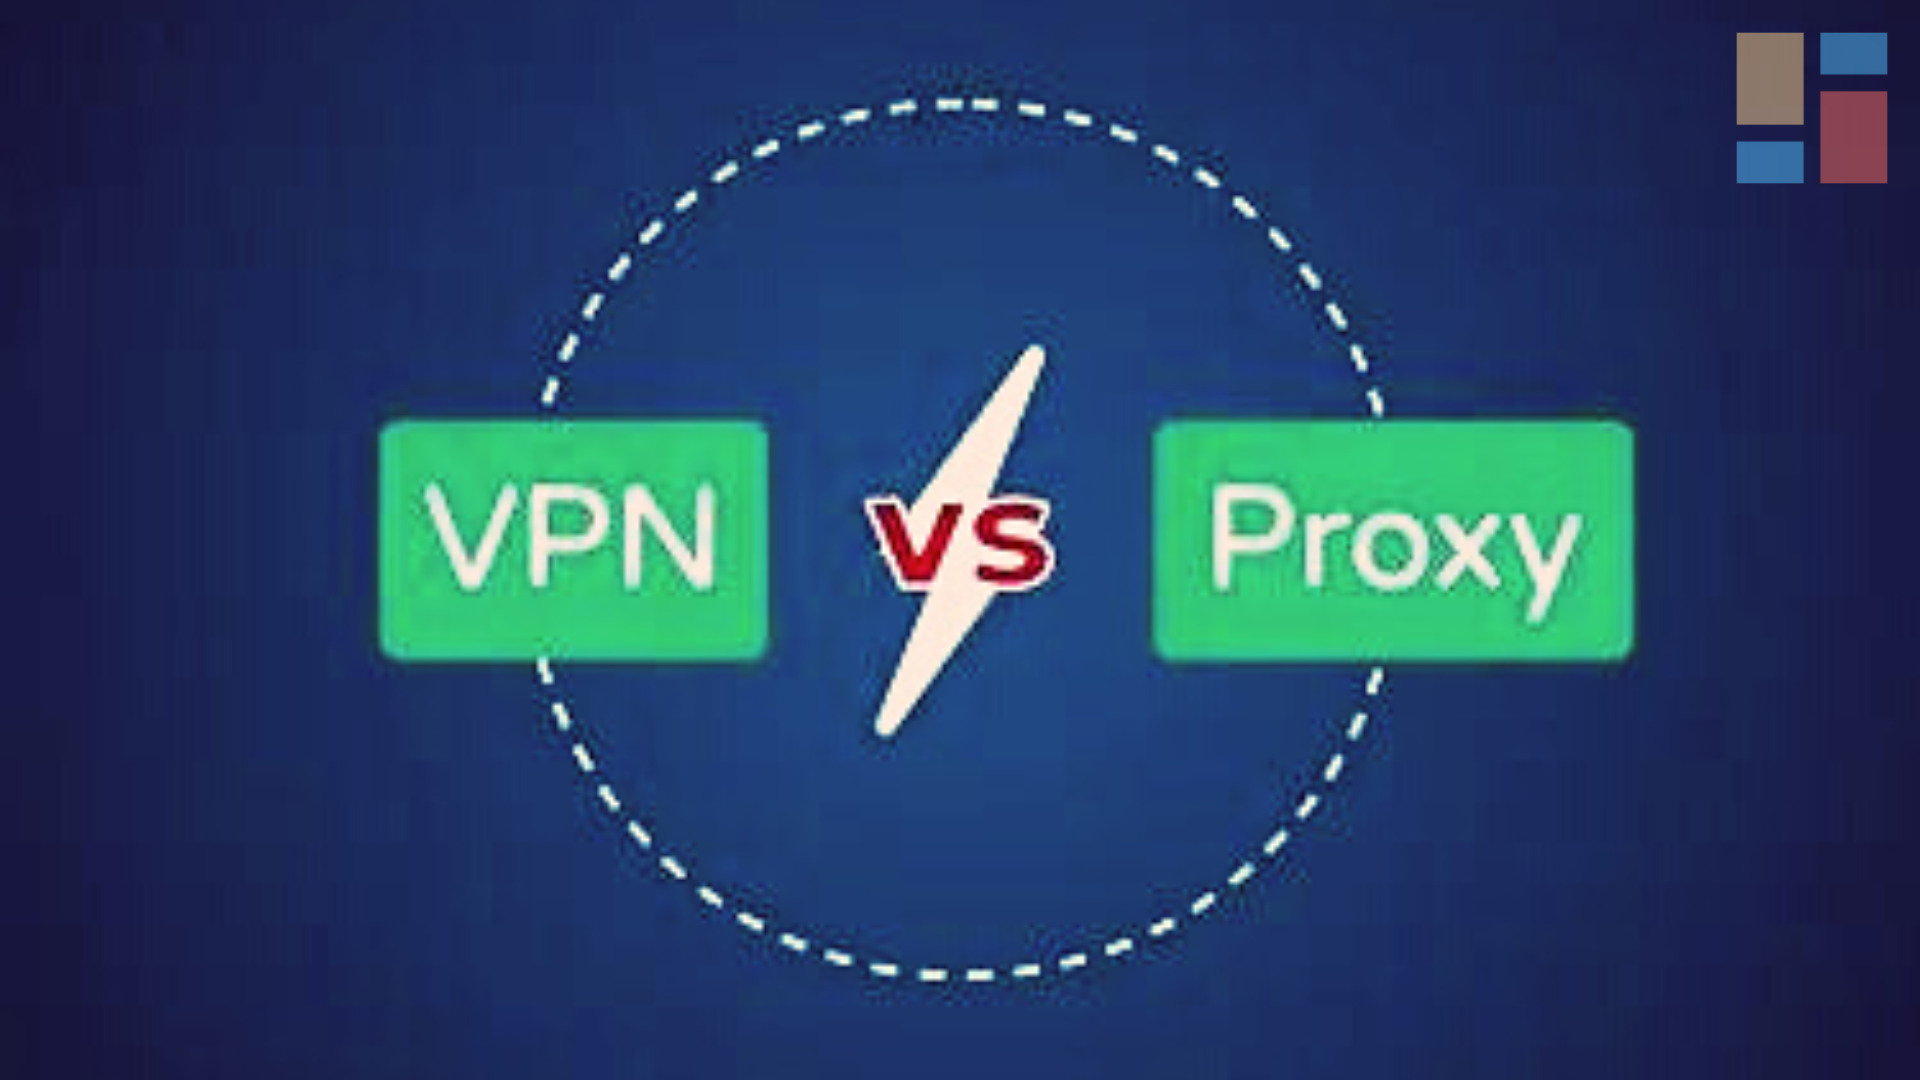 VPN VS Proxy